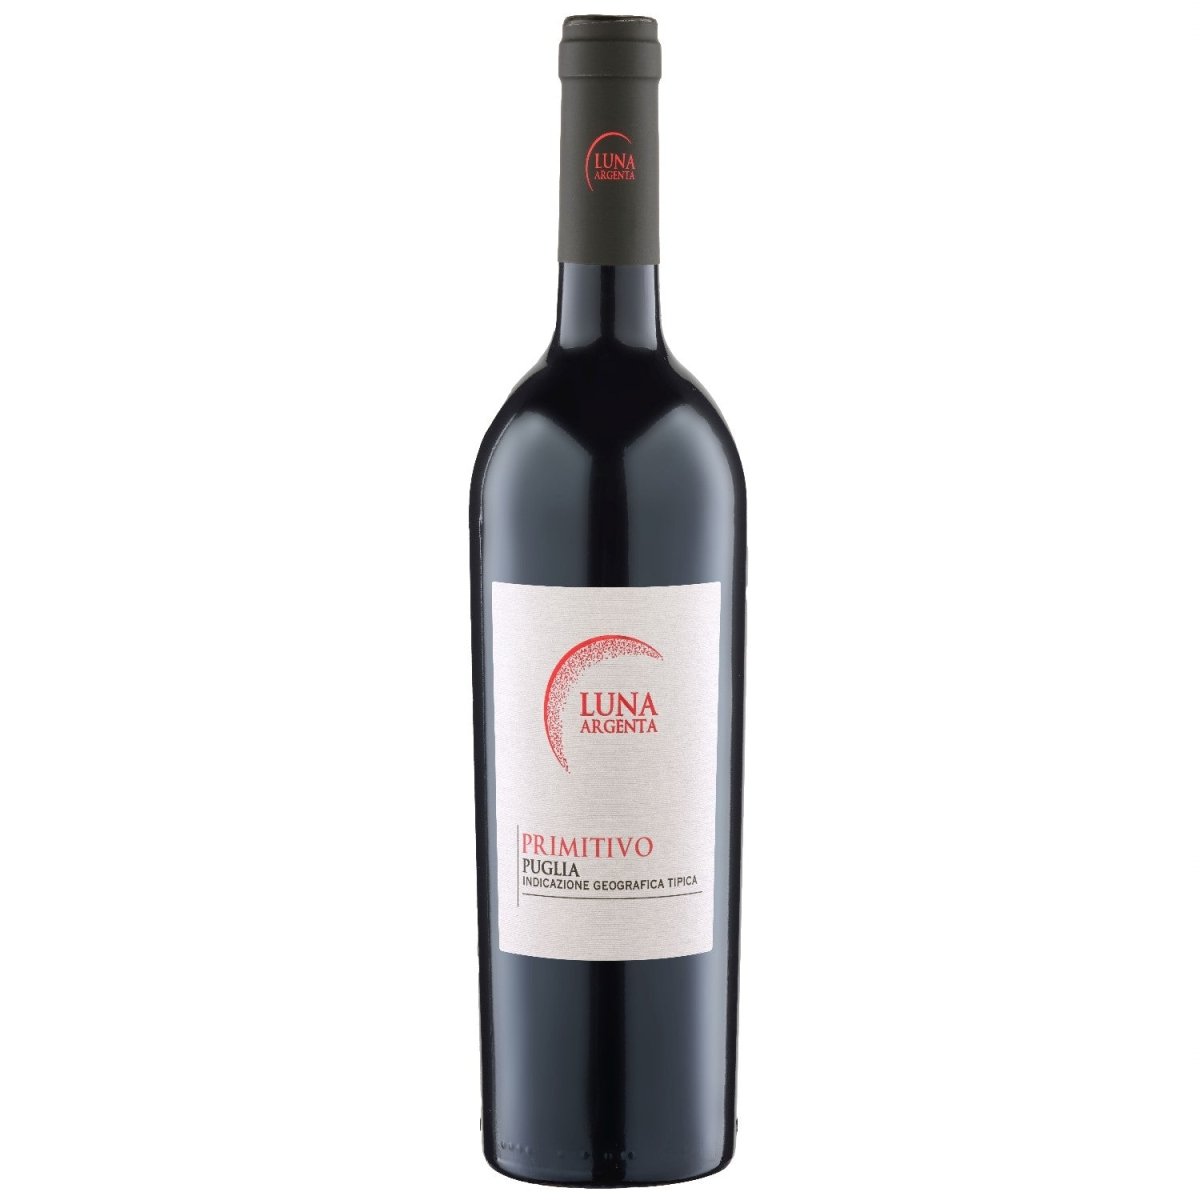 Luna Argenta Primitivo Puglia IGT halbtrocken – Rotwein Wein Versanel Italien (12